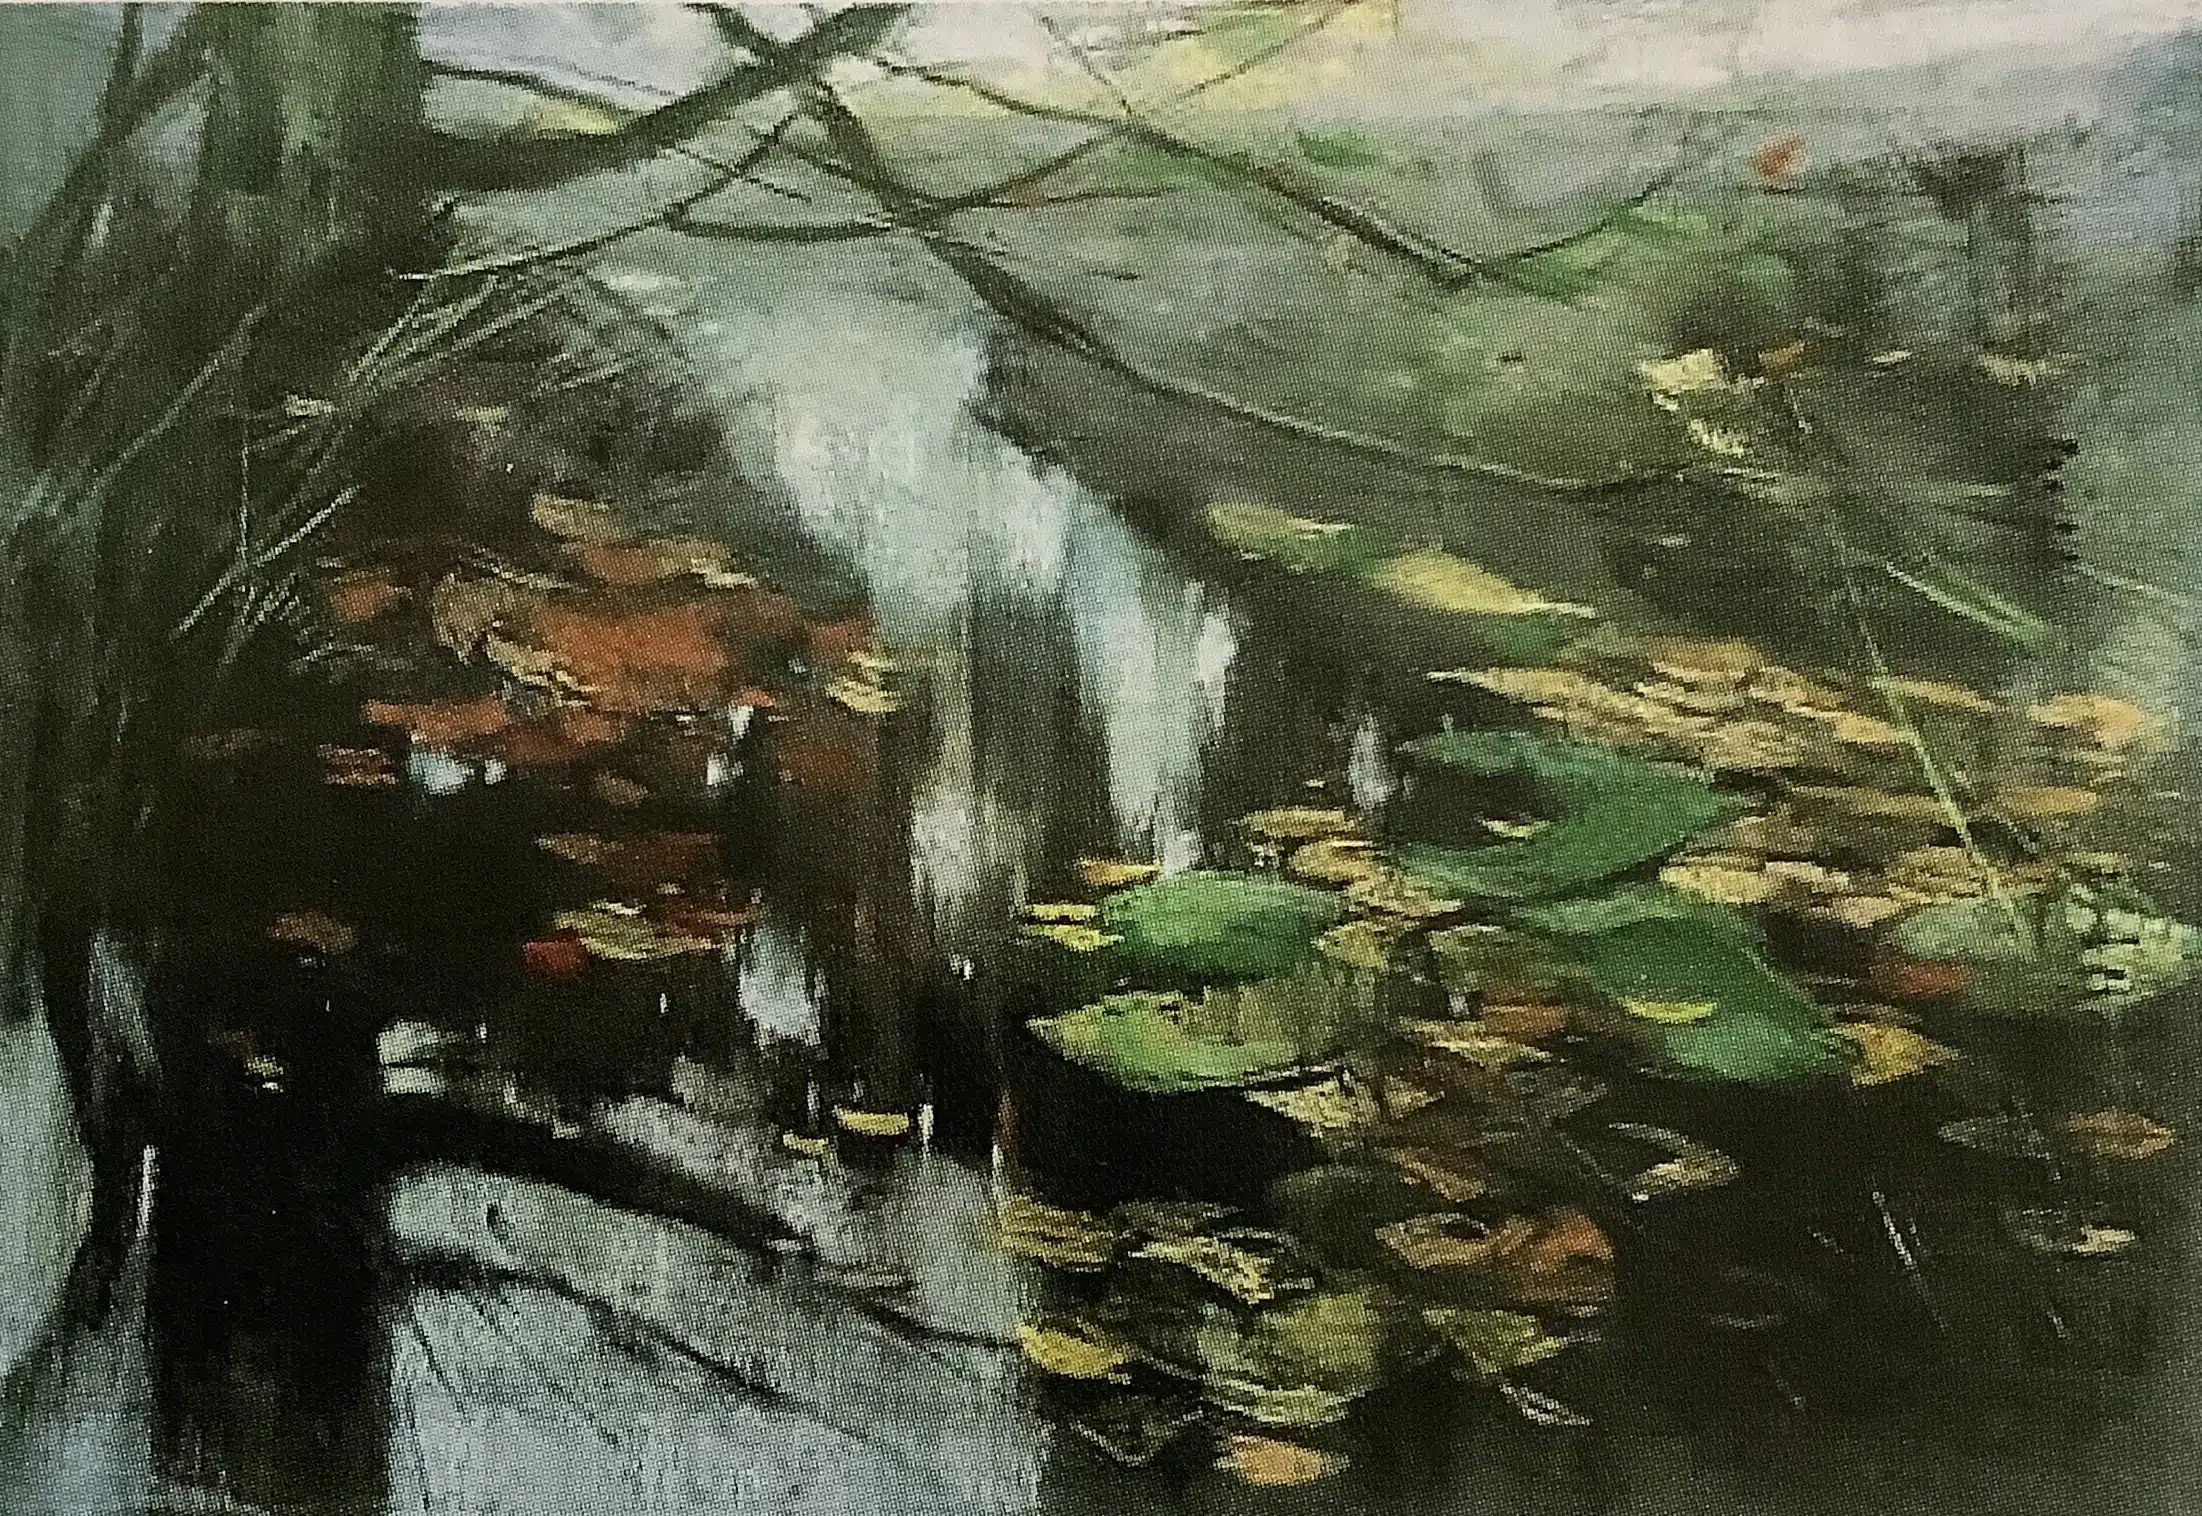 HerbstlichesFließ, 1900